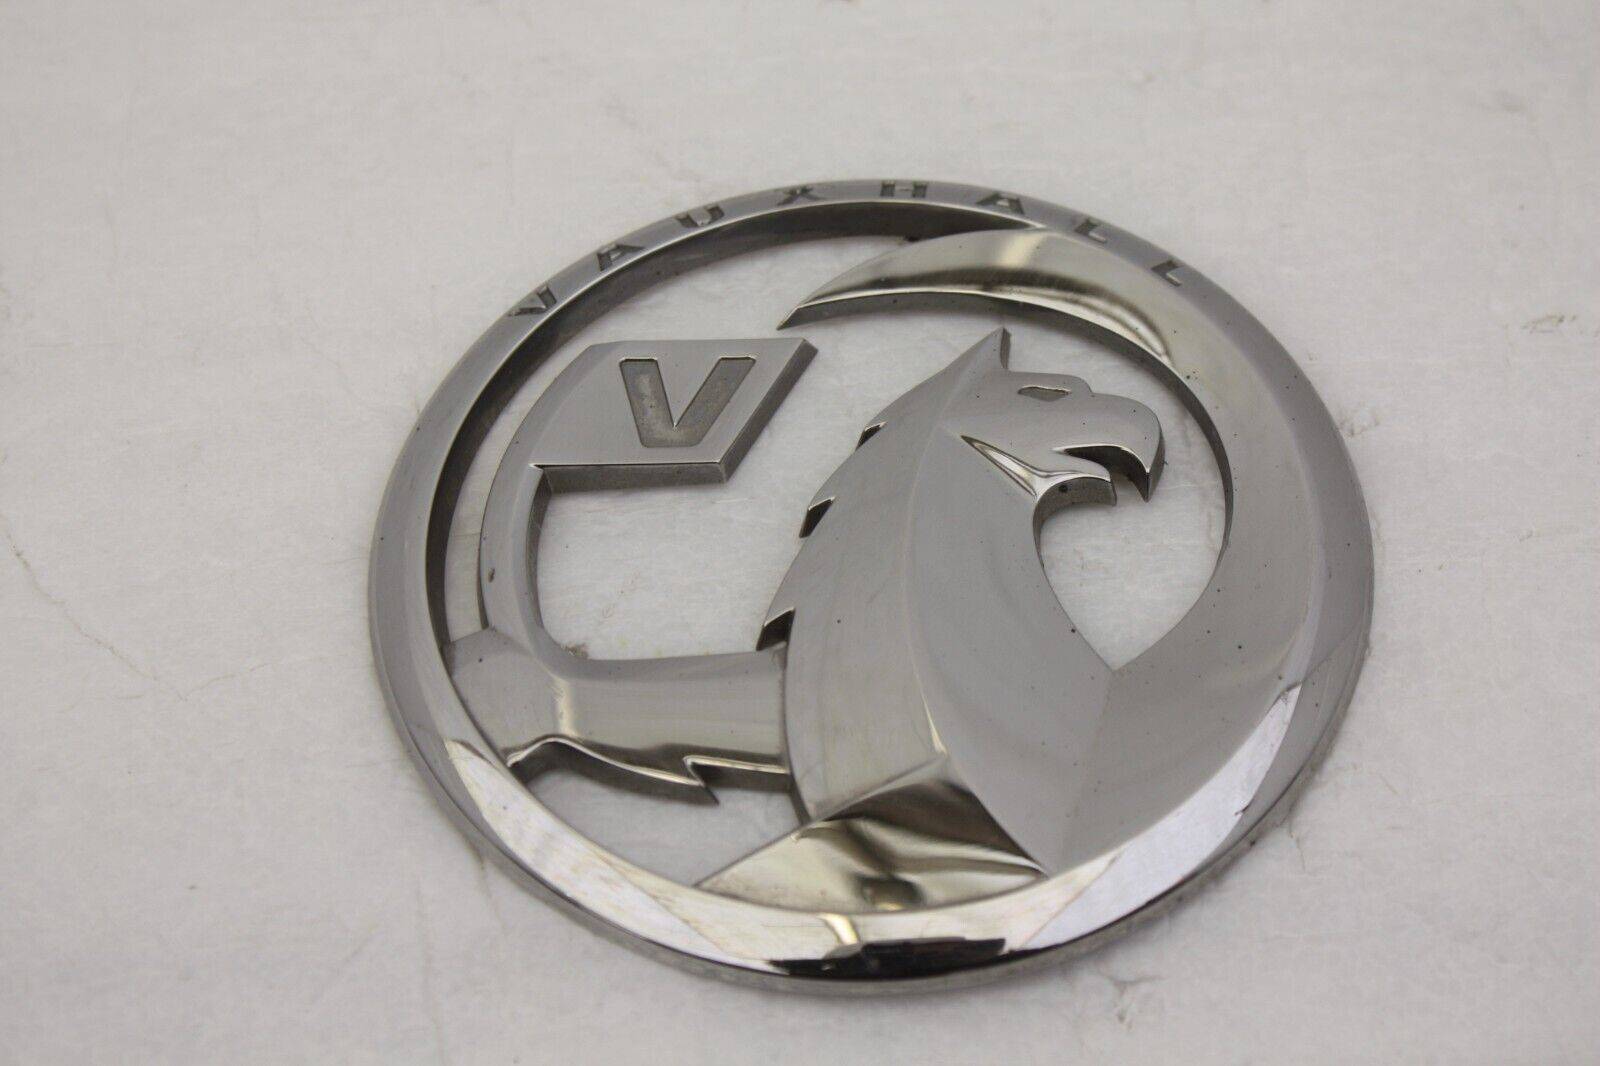 Vauxhall Vivaro Rear Emblem Badge 9827801777 Genuine 176398806811